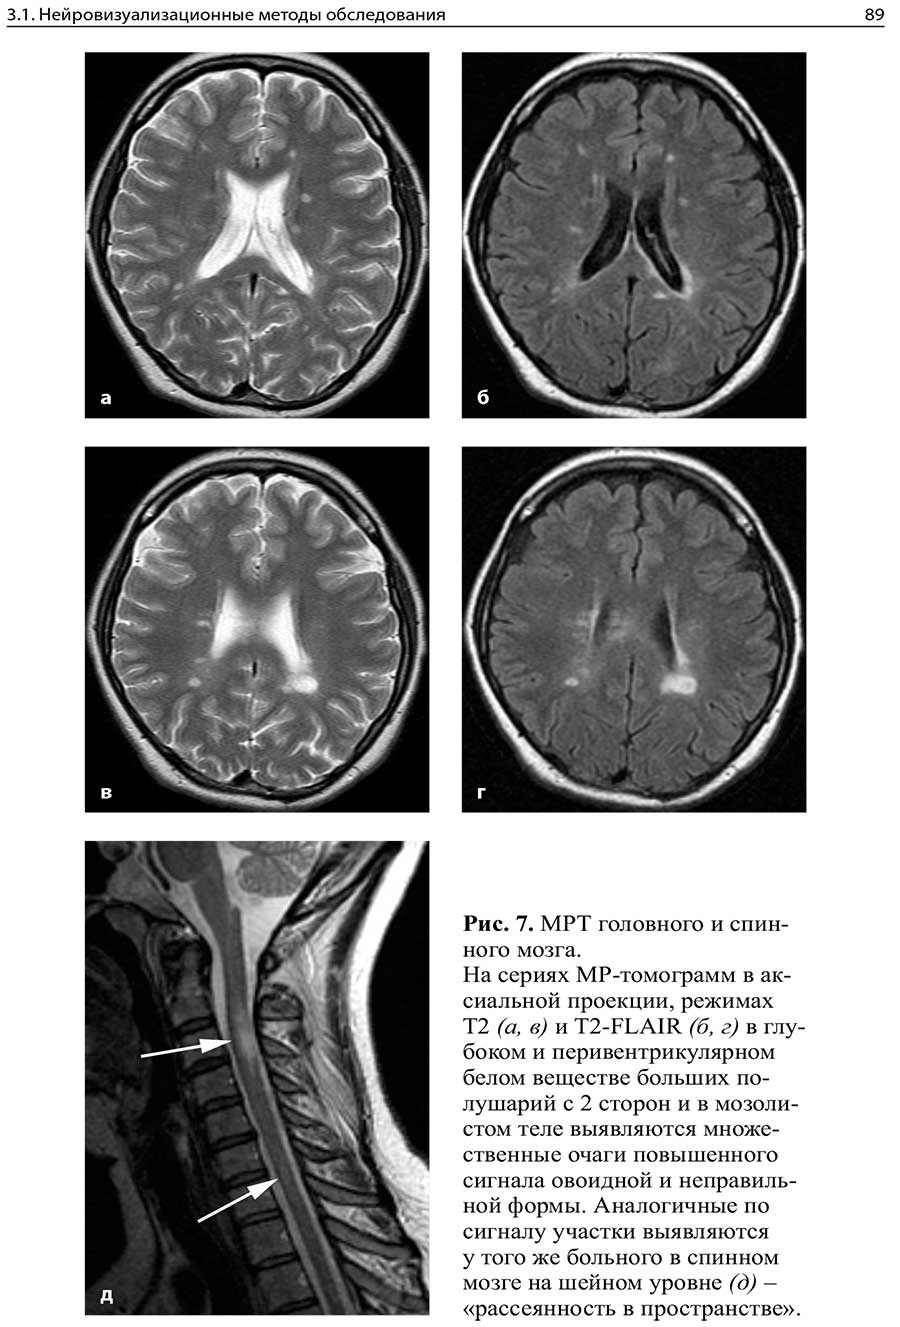 Рис. 7. MPT головного и спинного мозга